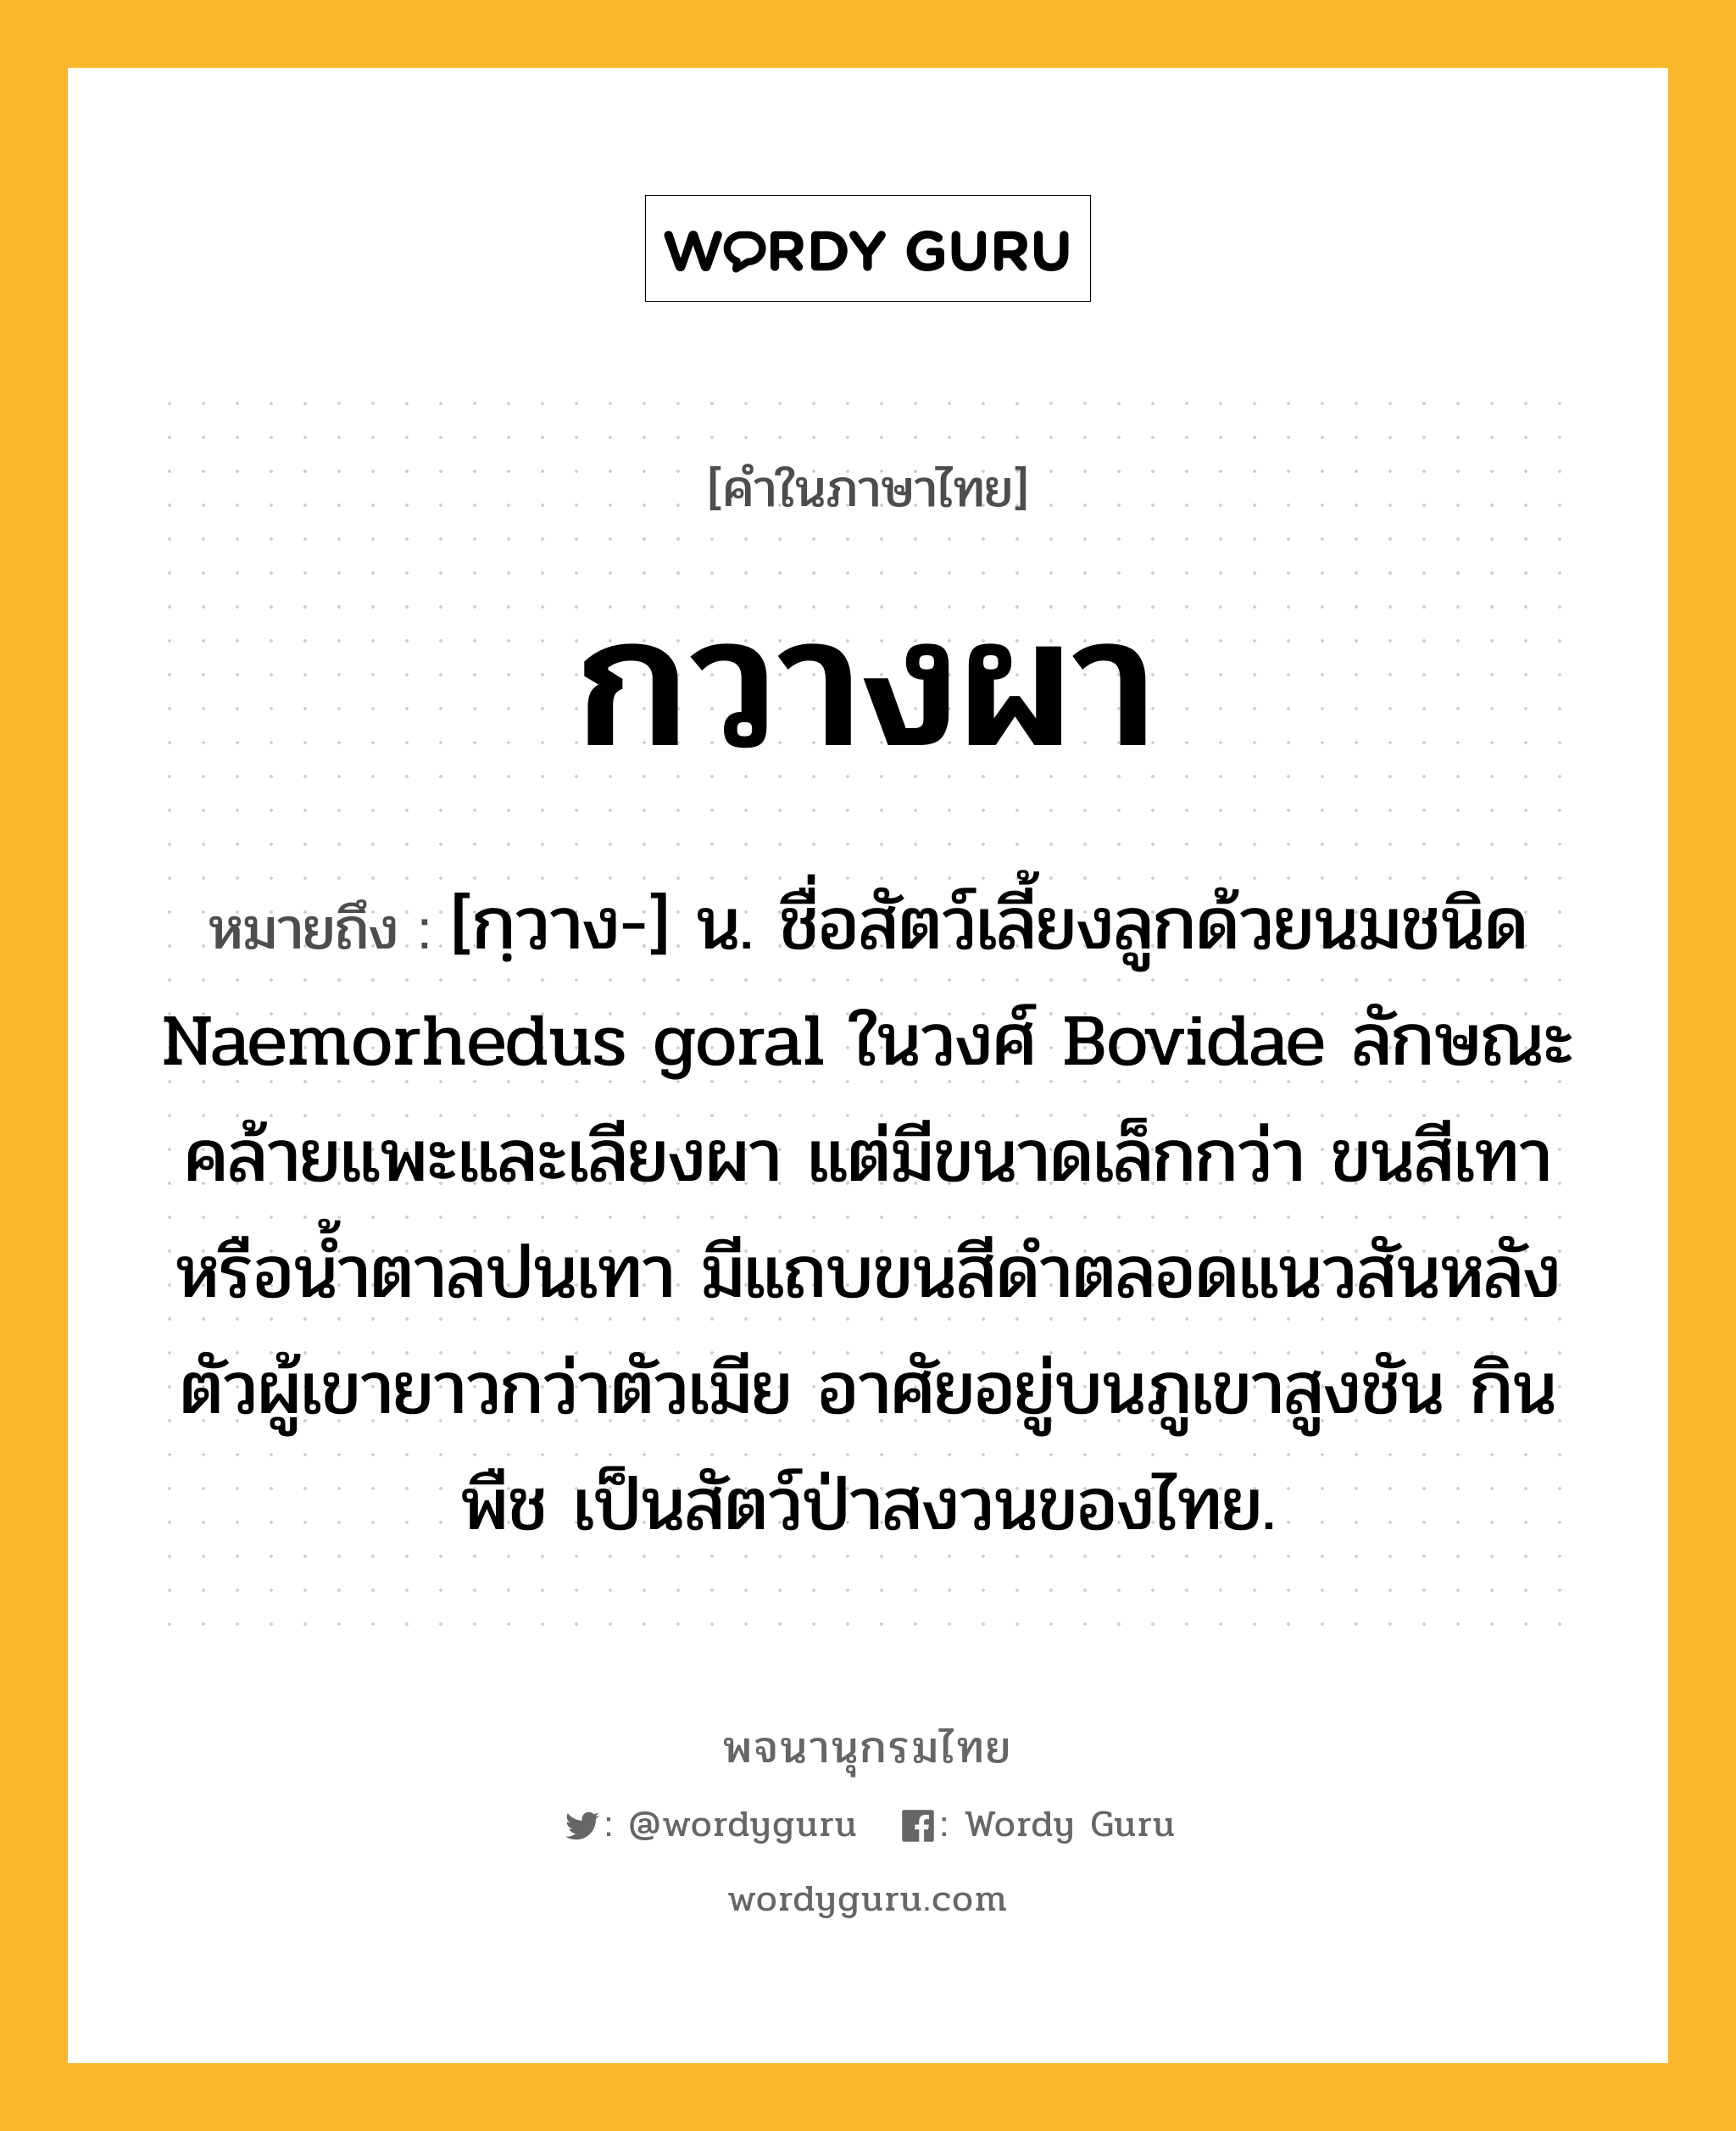 กวางผา หมายถึงอะไร?, คำในภาษาไทย กวางผา หมายถึง [กฺวาง-] น. ชื่อสัตว์เลี้ยงลูกด้วยนมชนิด Naemorhedus goral ในวงศ์ Bovidae ลักษณะคล้ายแพะและเลียงผา แต่มีขนาดเล็กกว่า ขนสีเทาหรือน้ำตาลปนเทา มีแถบขนสีดำตลอดแนวสันหลัง ตัวผู้เขายาวกว่าตัวเมีย อาศัยอยู่บนภูเขาสูงชัน กินพืช เป็นสัตว์ป่าสงวนของไทย.